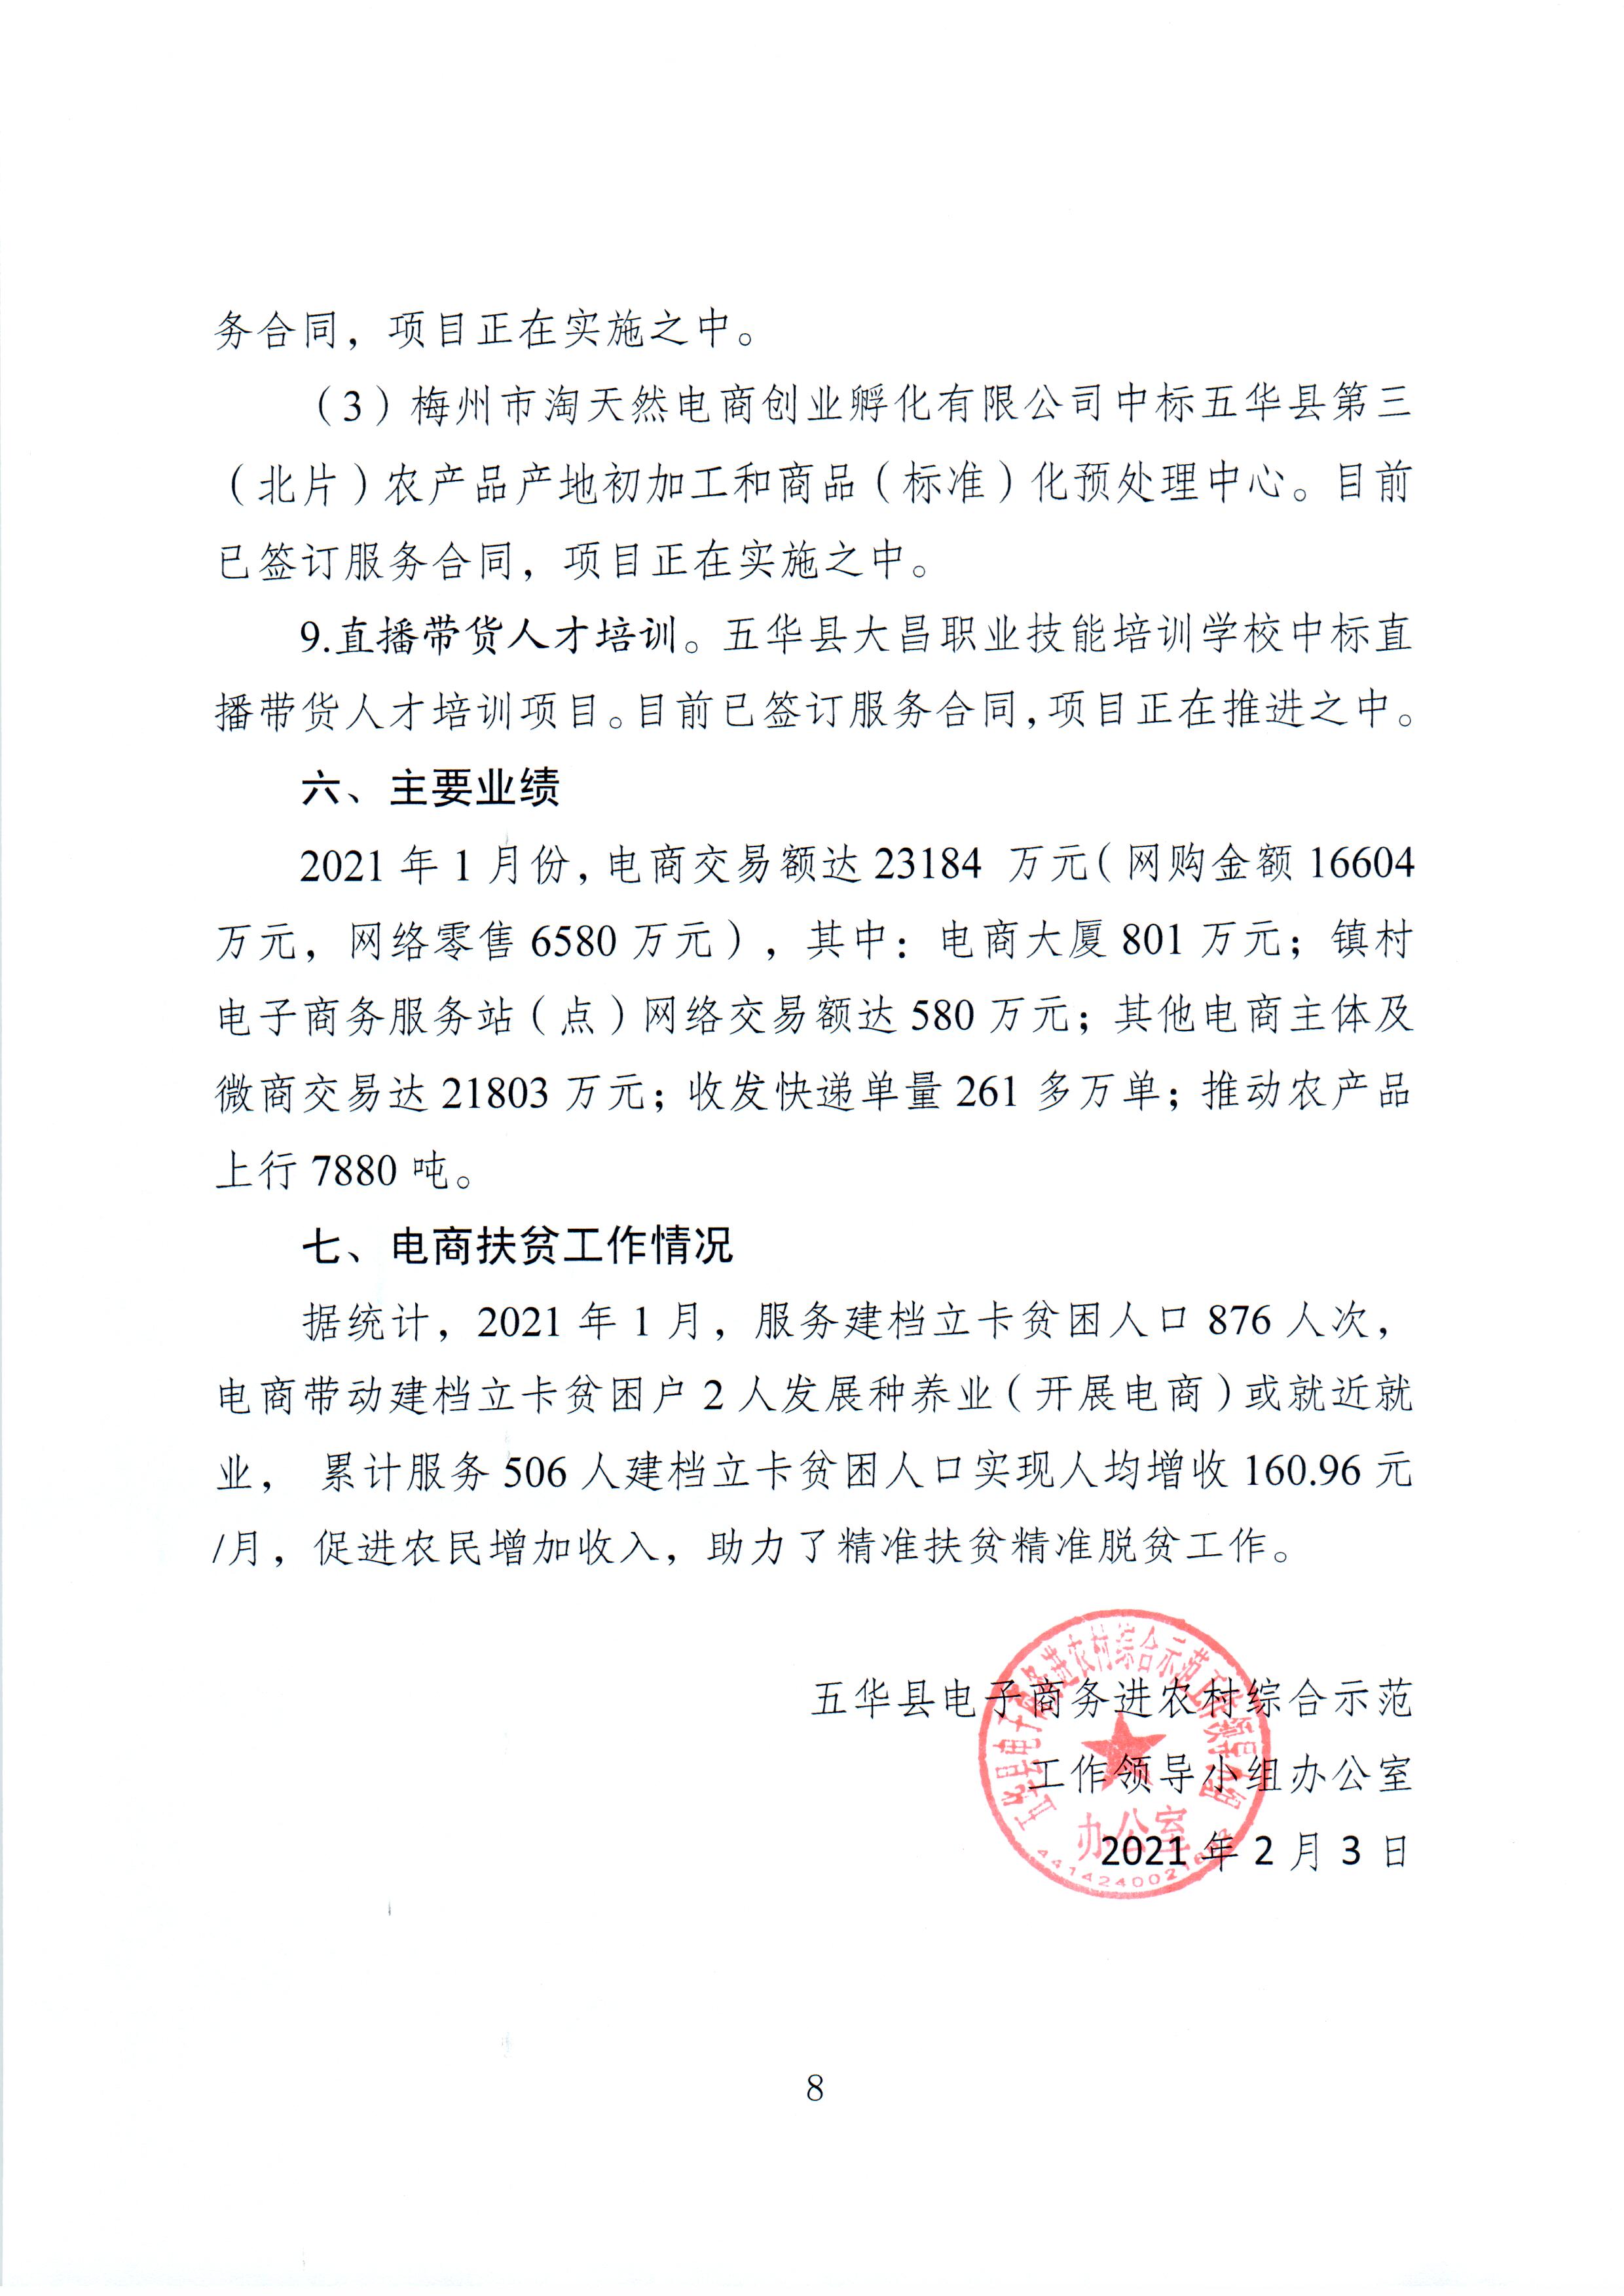 1、五华县电子商务进农村综合示范项目2021年1月工作推进情况（领导小组办公室）--（2021年2月3日确定版） (8).jpg